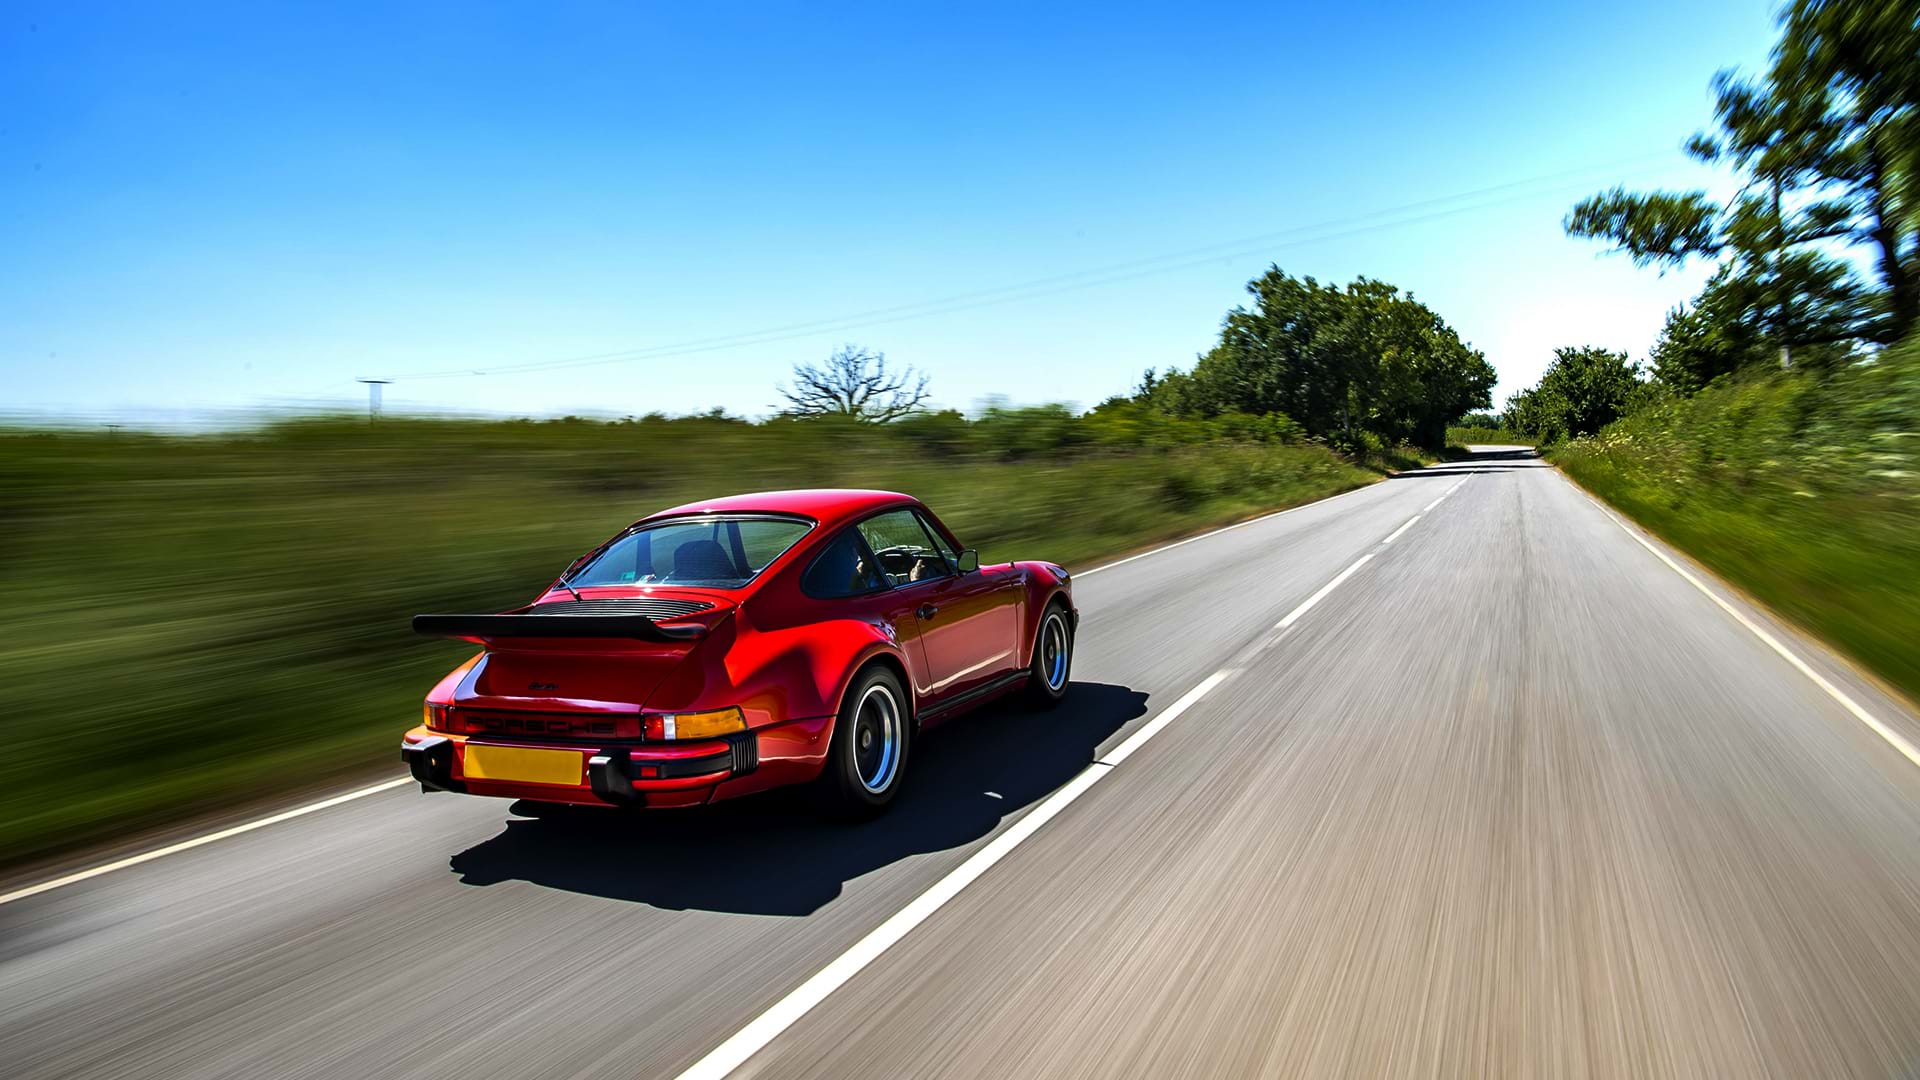 Rouge vintage Porsche 930 Turbo rugissant sur une belle route de campagne par une journée ensoleillée.